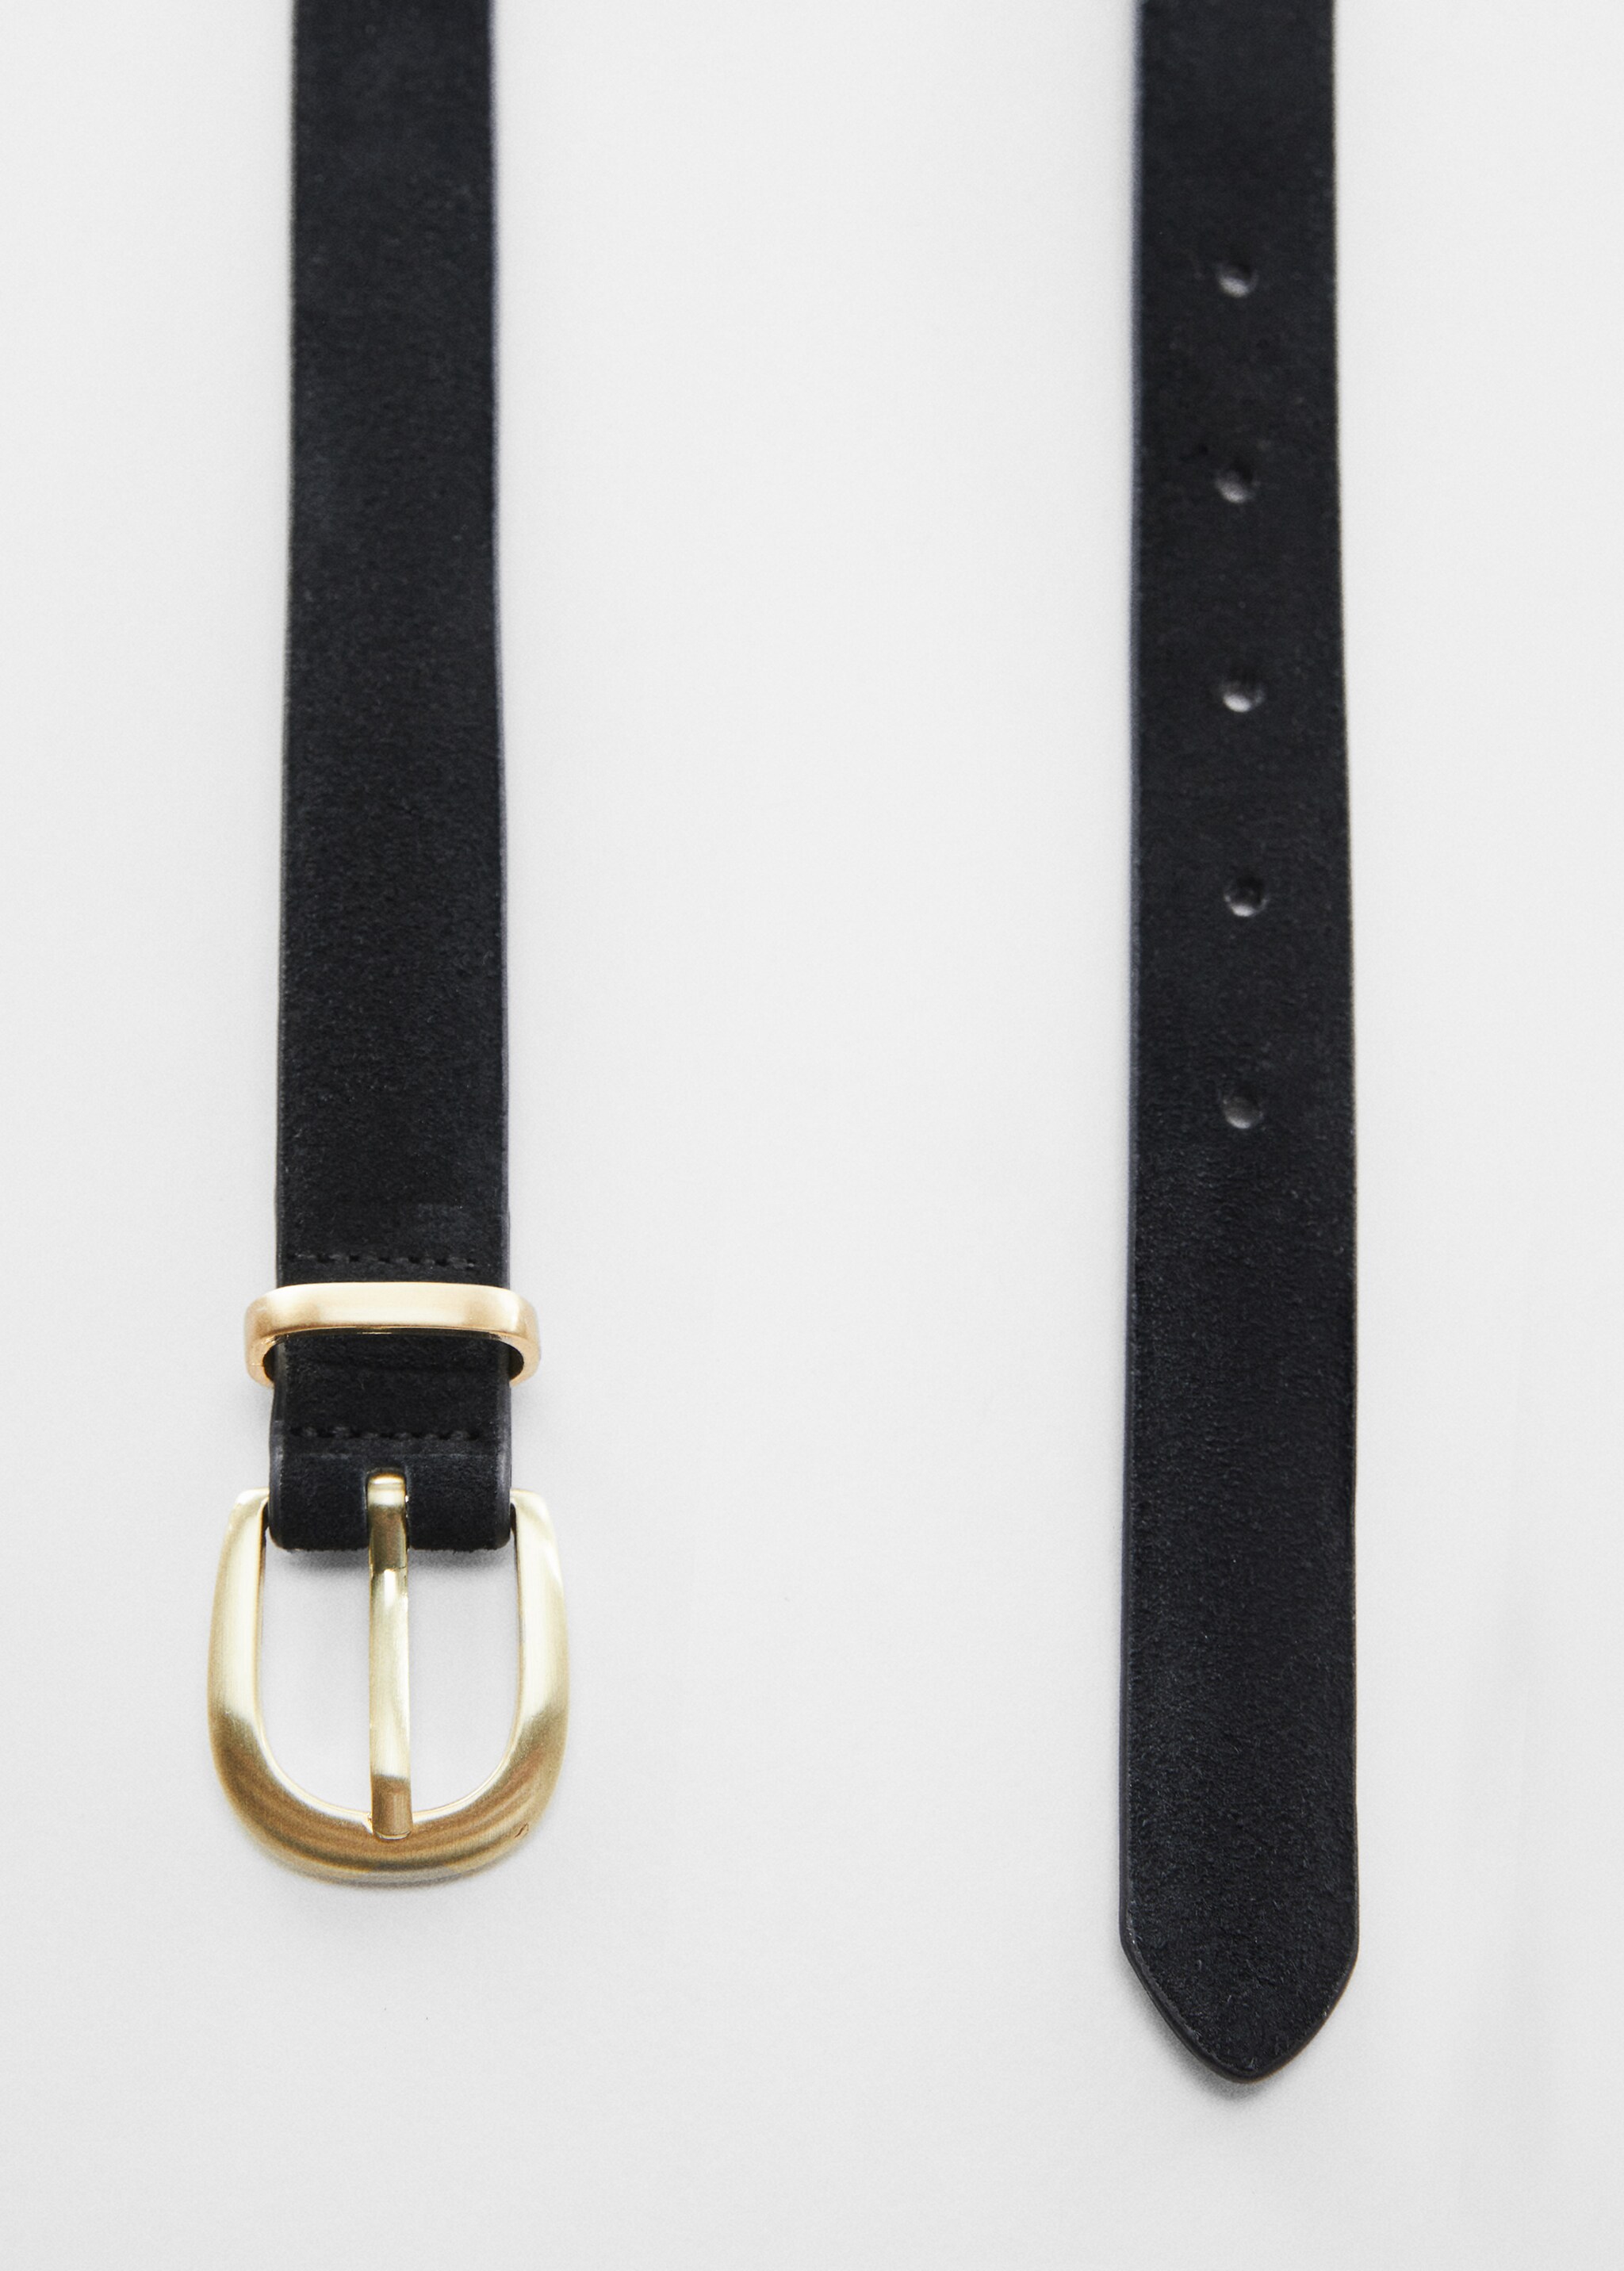 Buckle leather belt - Detaliu al articolului 1